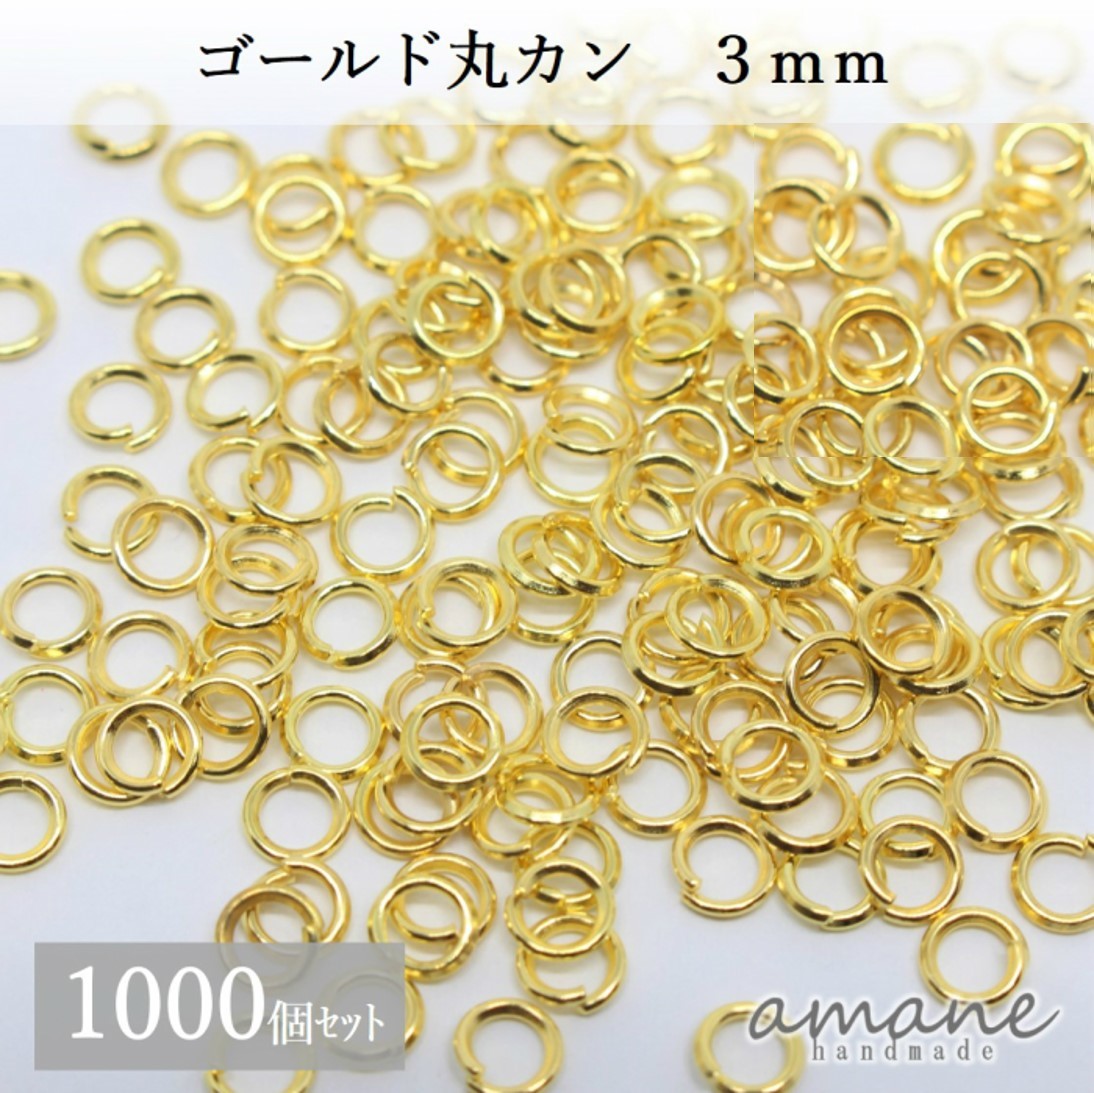 約1000個 3mm 丸カン ゴールド アクセサリーパーツ 材料 接続金具 ハンドメイドパーツ